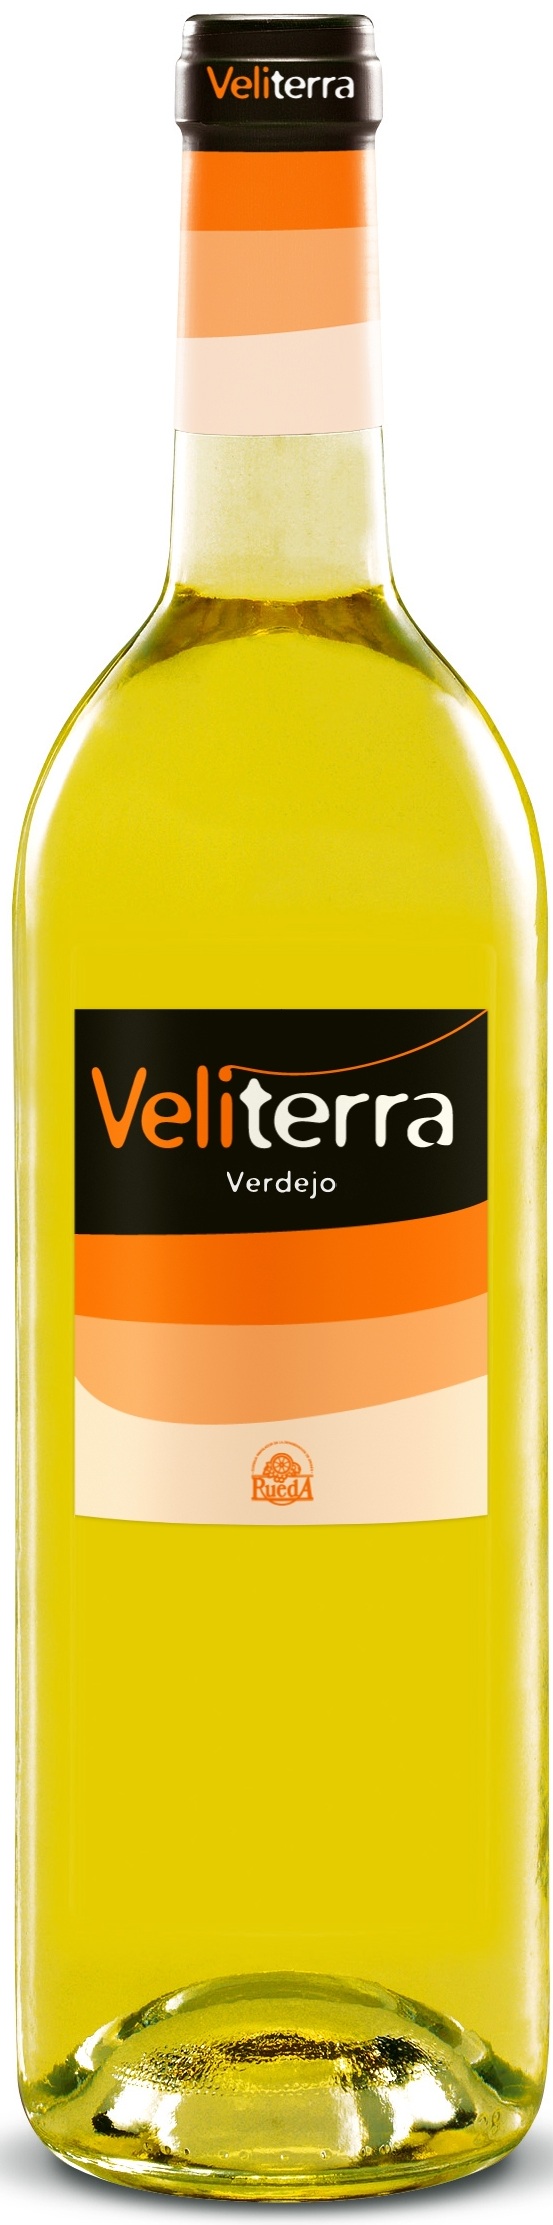 Bild von der Weinflasche Veliterra